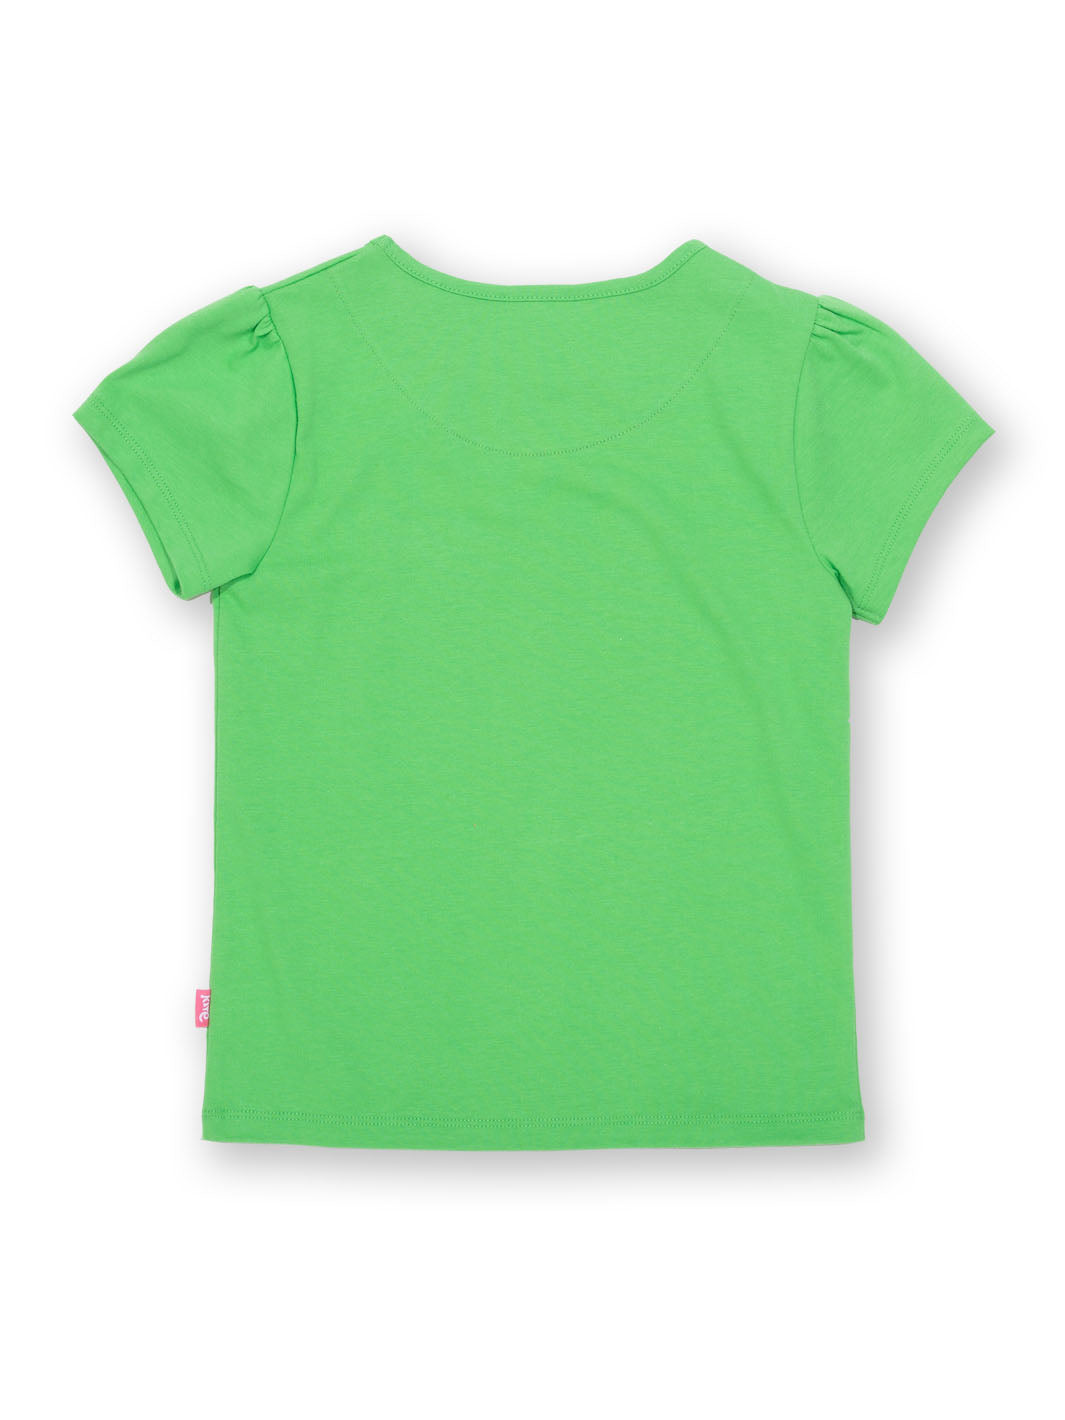 Kite Butterfly T-Shirt - Green